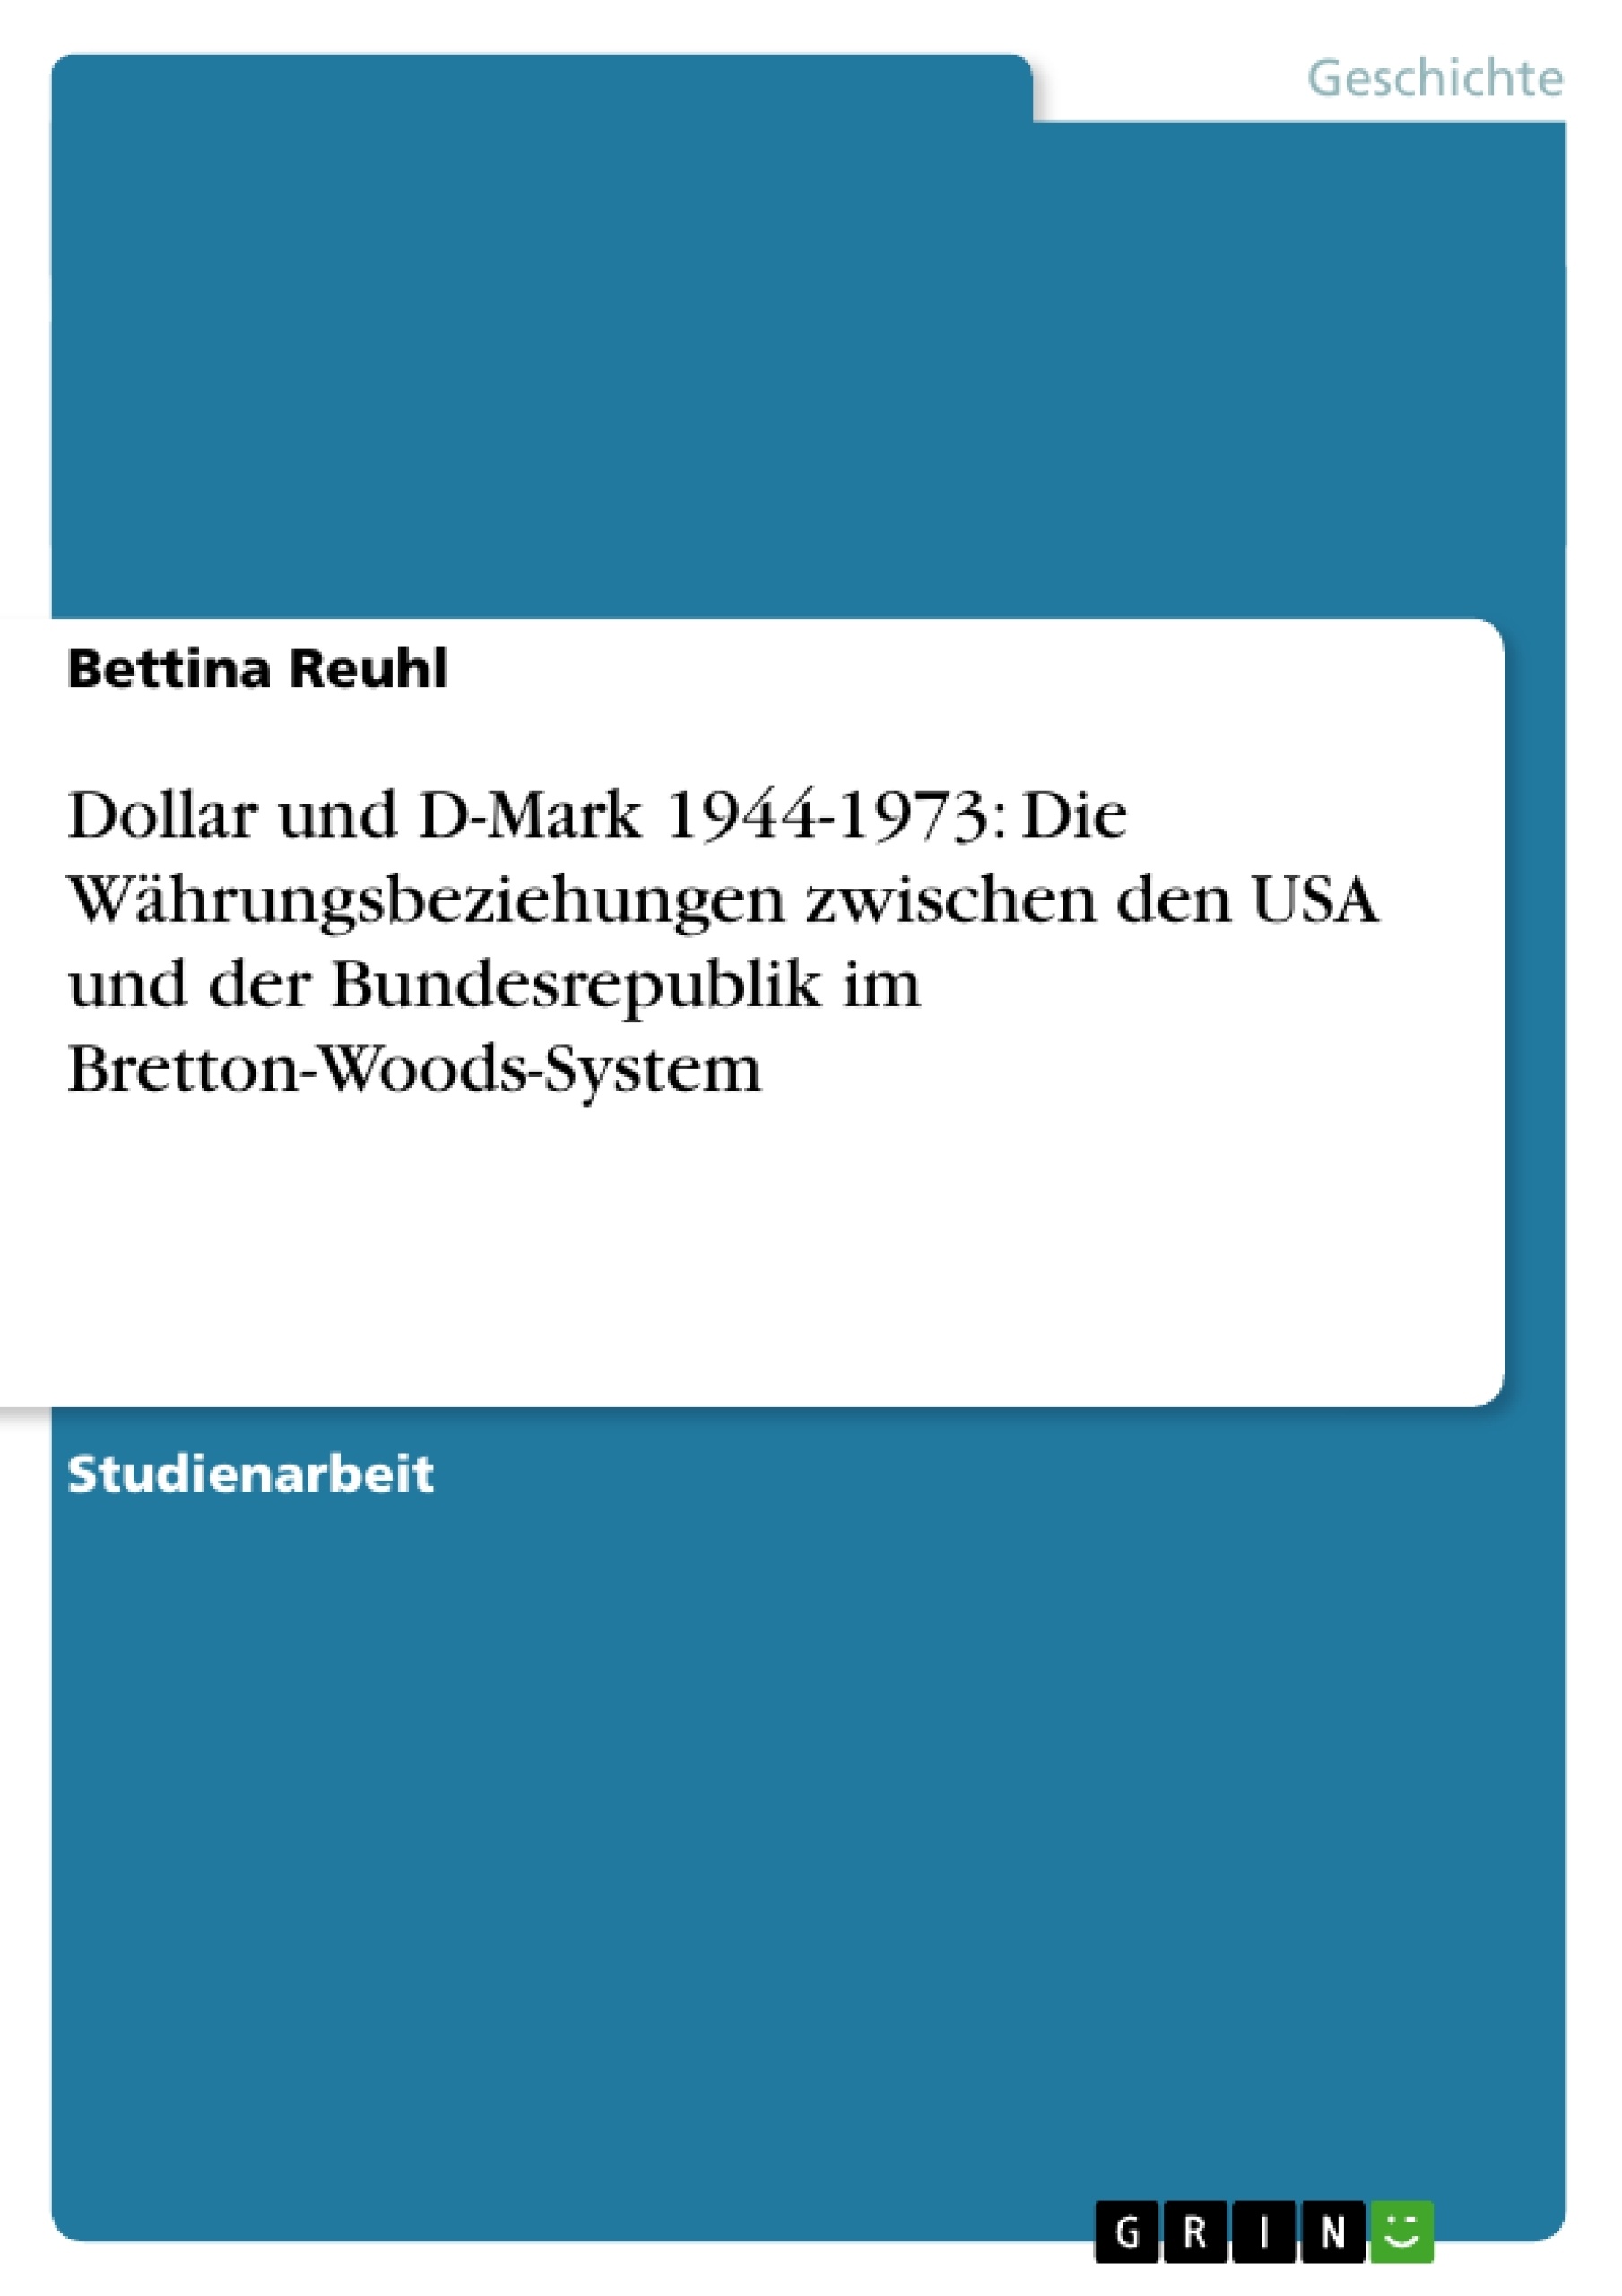 Titre: Dollar und D-Mark 1944-1973: Die Währungsbeziehungen zwischen den USA und der Bundesrepublik im Bretton-Woods-System